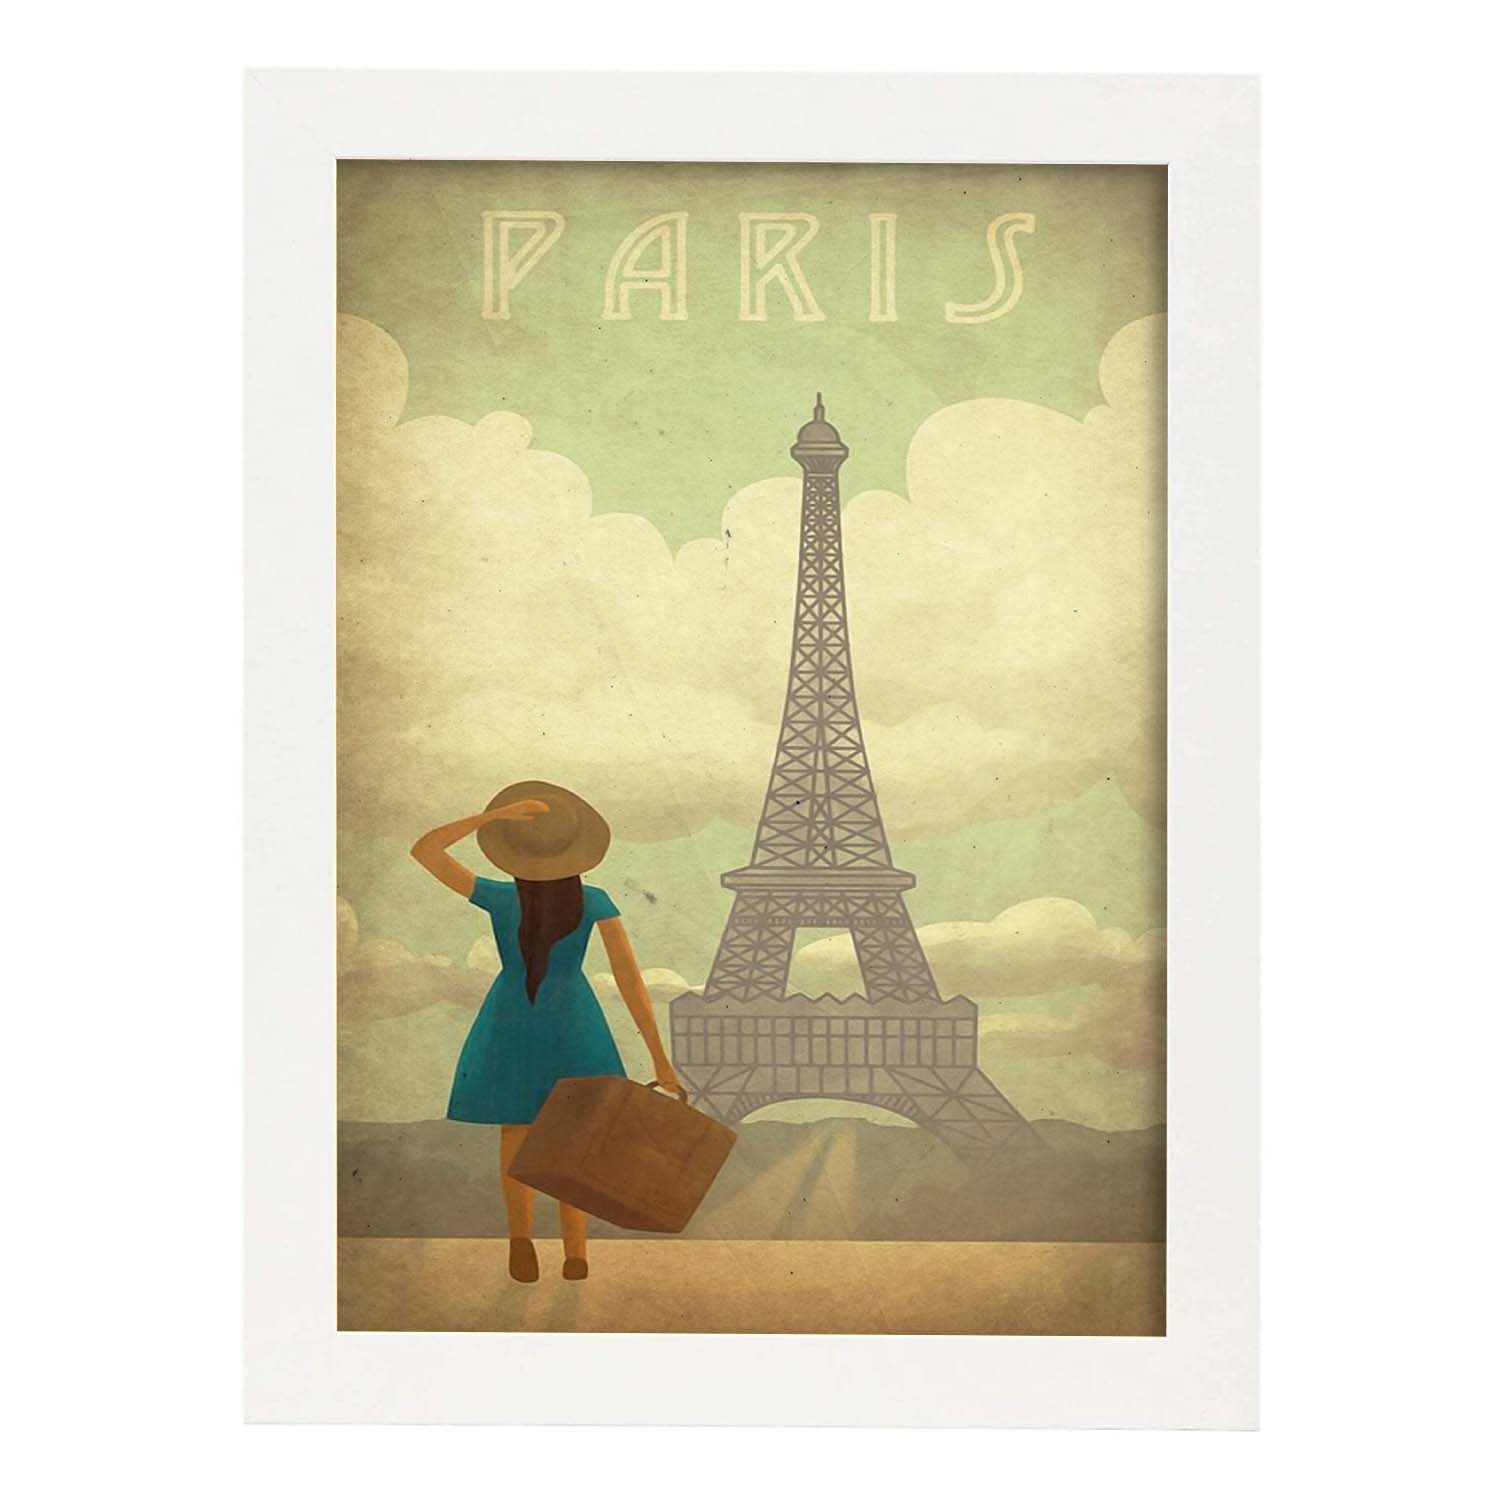 Poster vintage de Paris vintage. con imágenes vintage y de publicidad antigua.-Artwork-Nacnic-A3-Marco Blanco-Nacnic Estudio SL